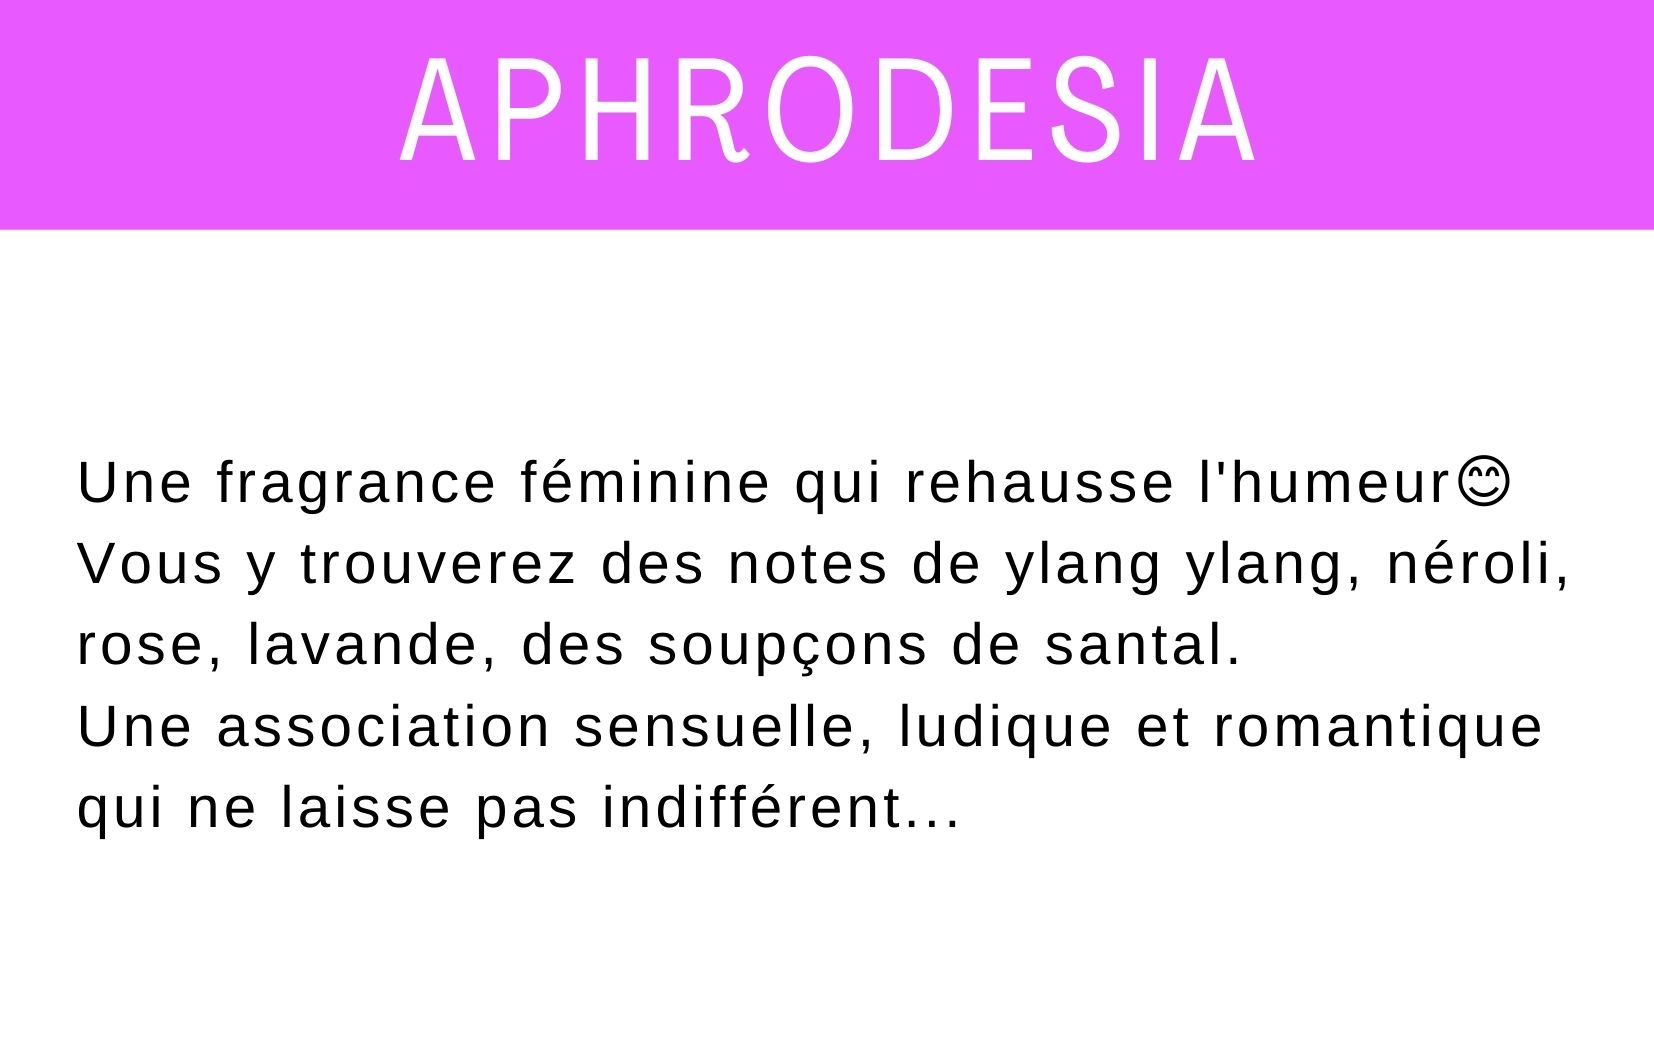 aphrodesia description